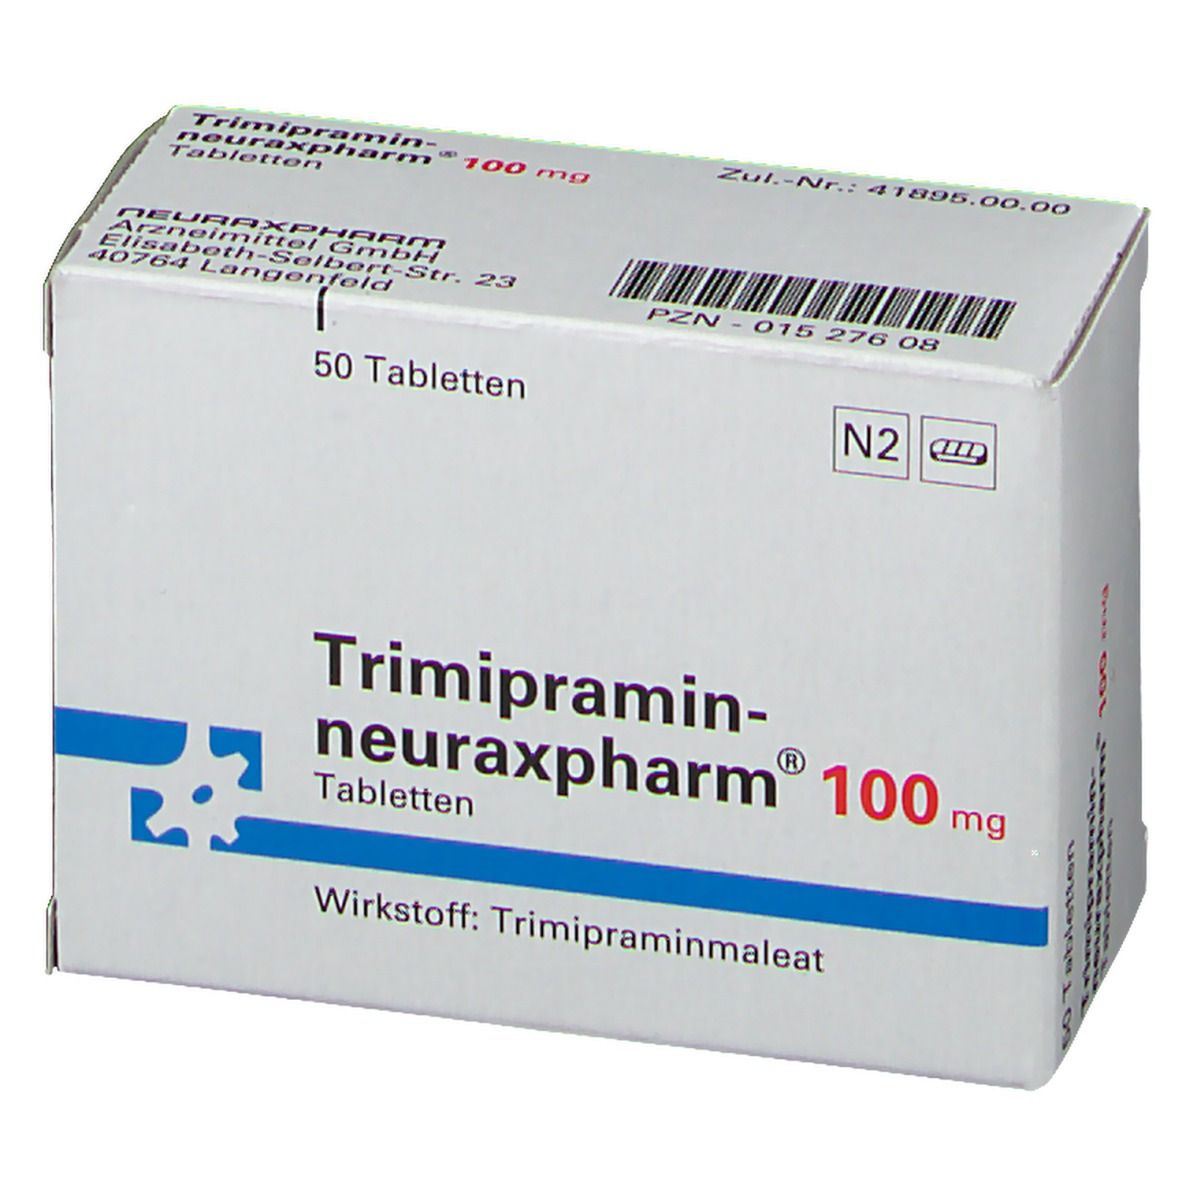 Trimipramin-neuraxpharm® 100 mg